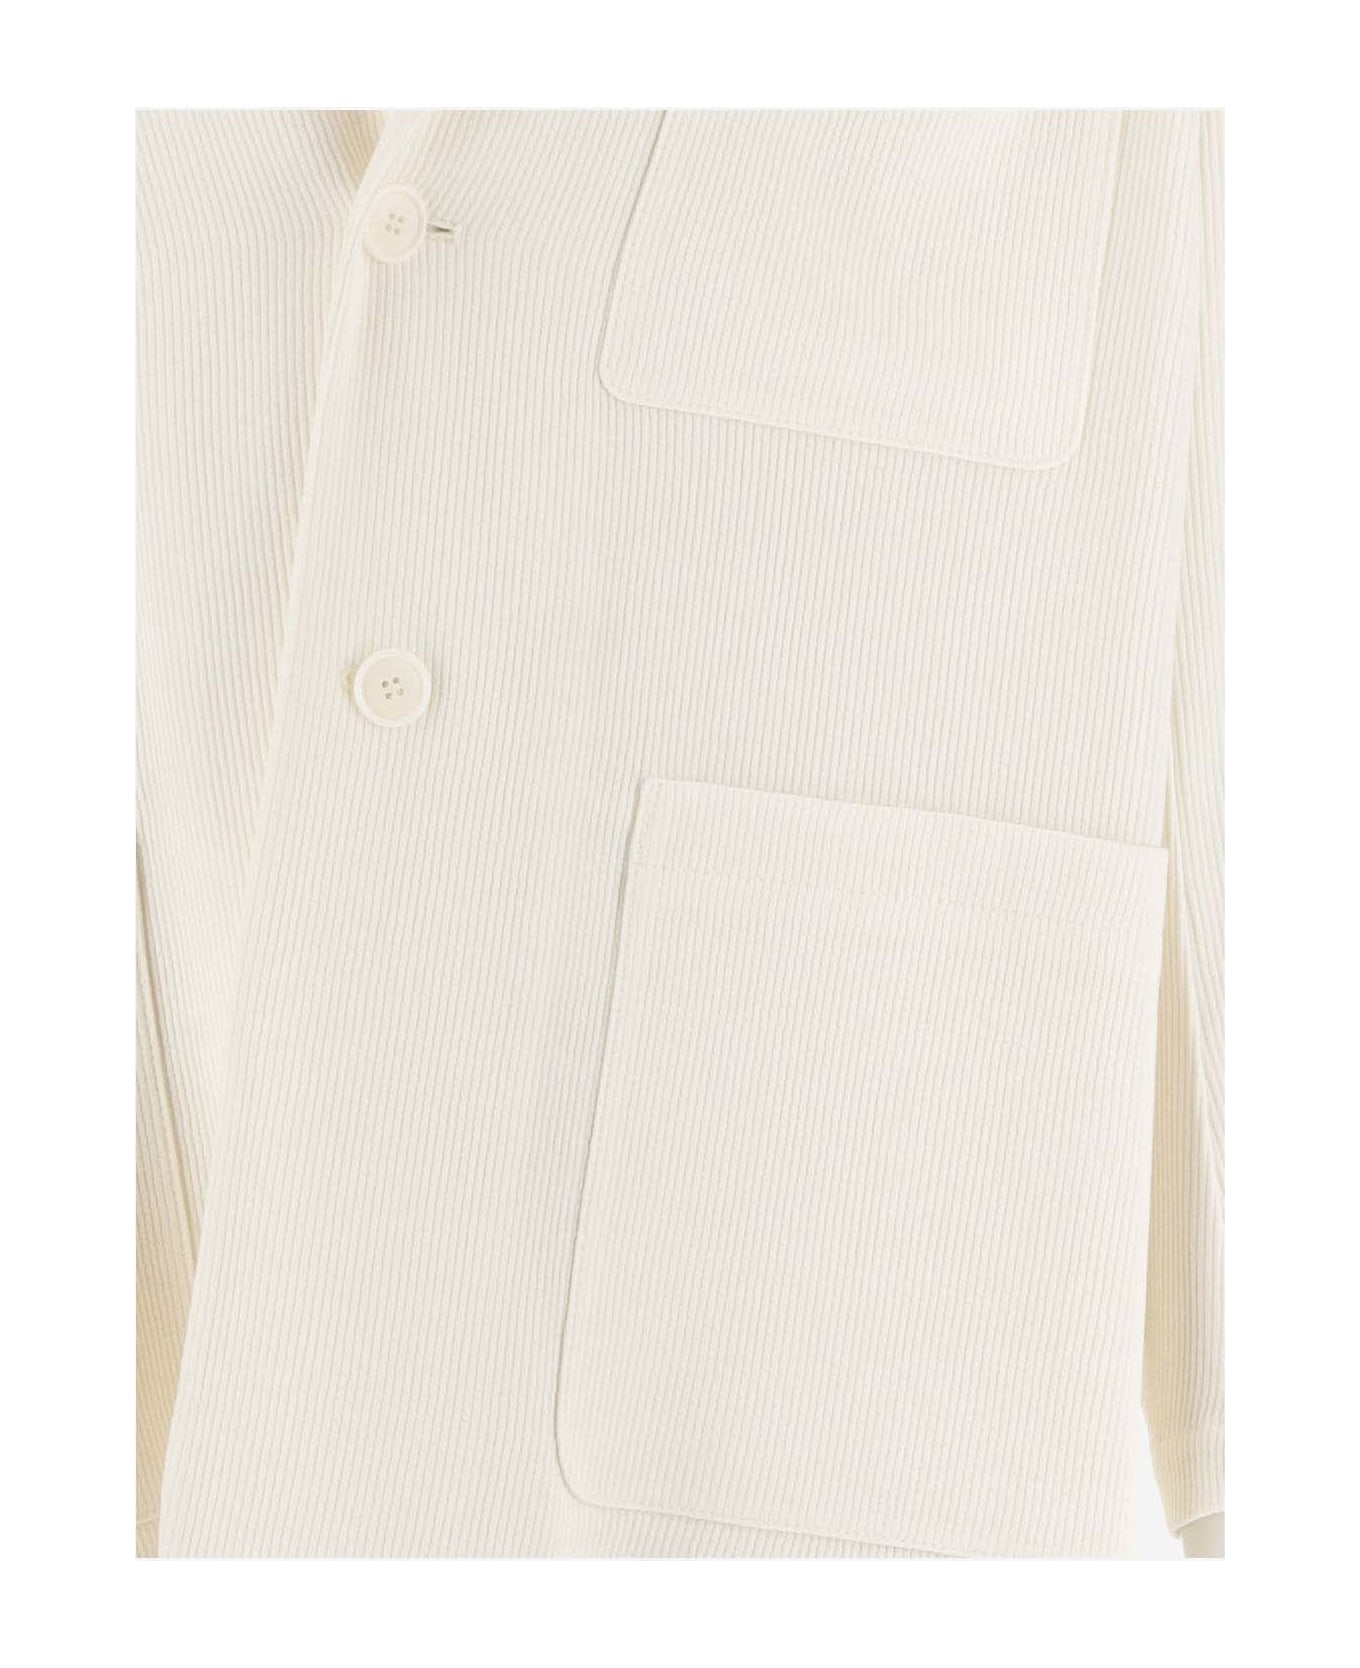 Giorgio Armani Single-buttoned Blazer - White